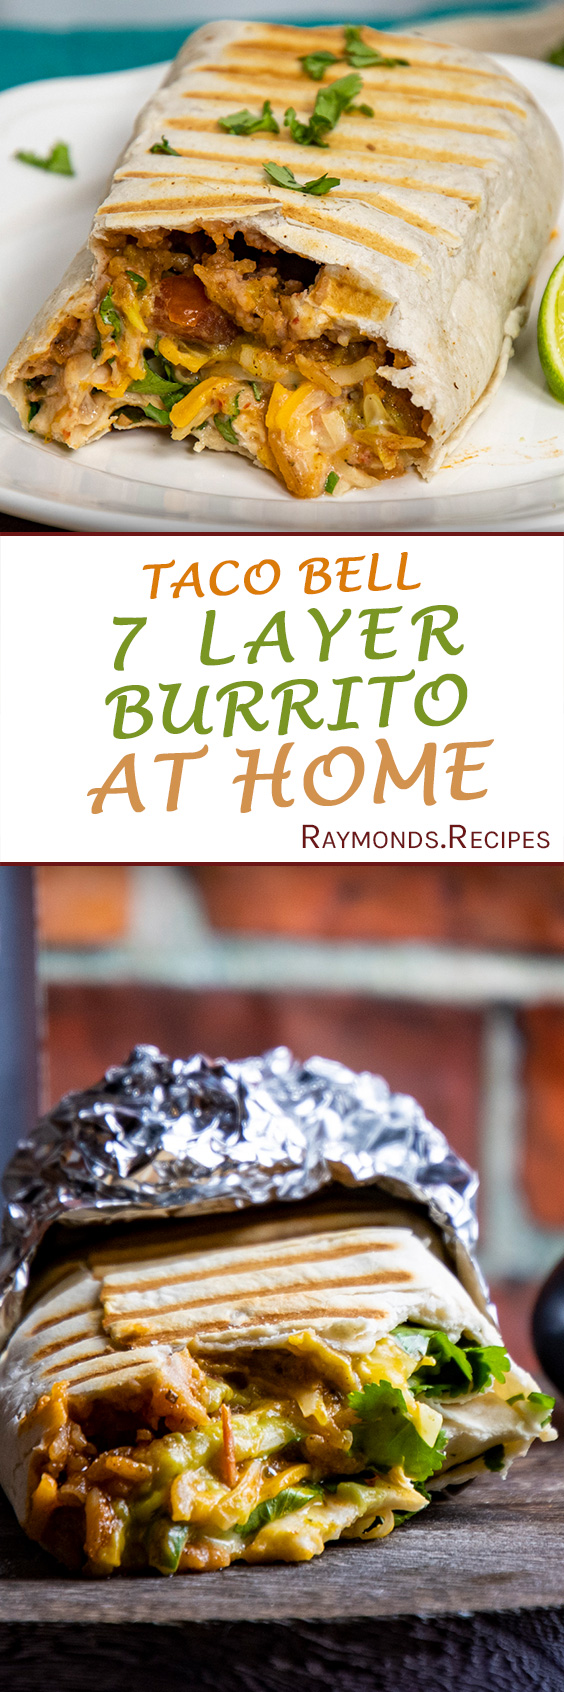 https://raymonds.recipes/wp-content/uploads/2021/02/7-layer-burrito.jpg